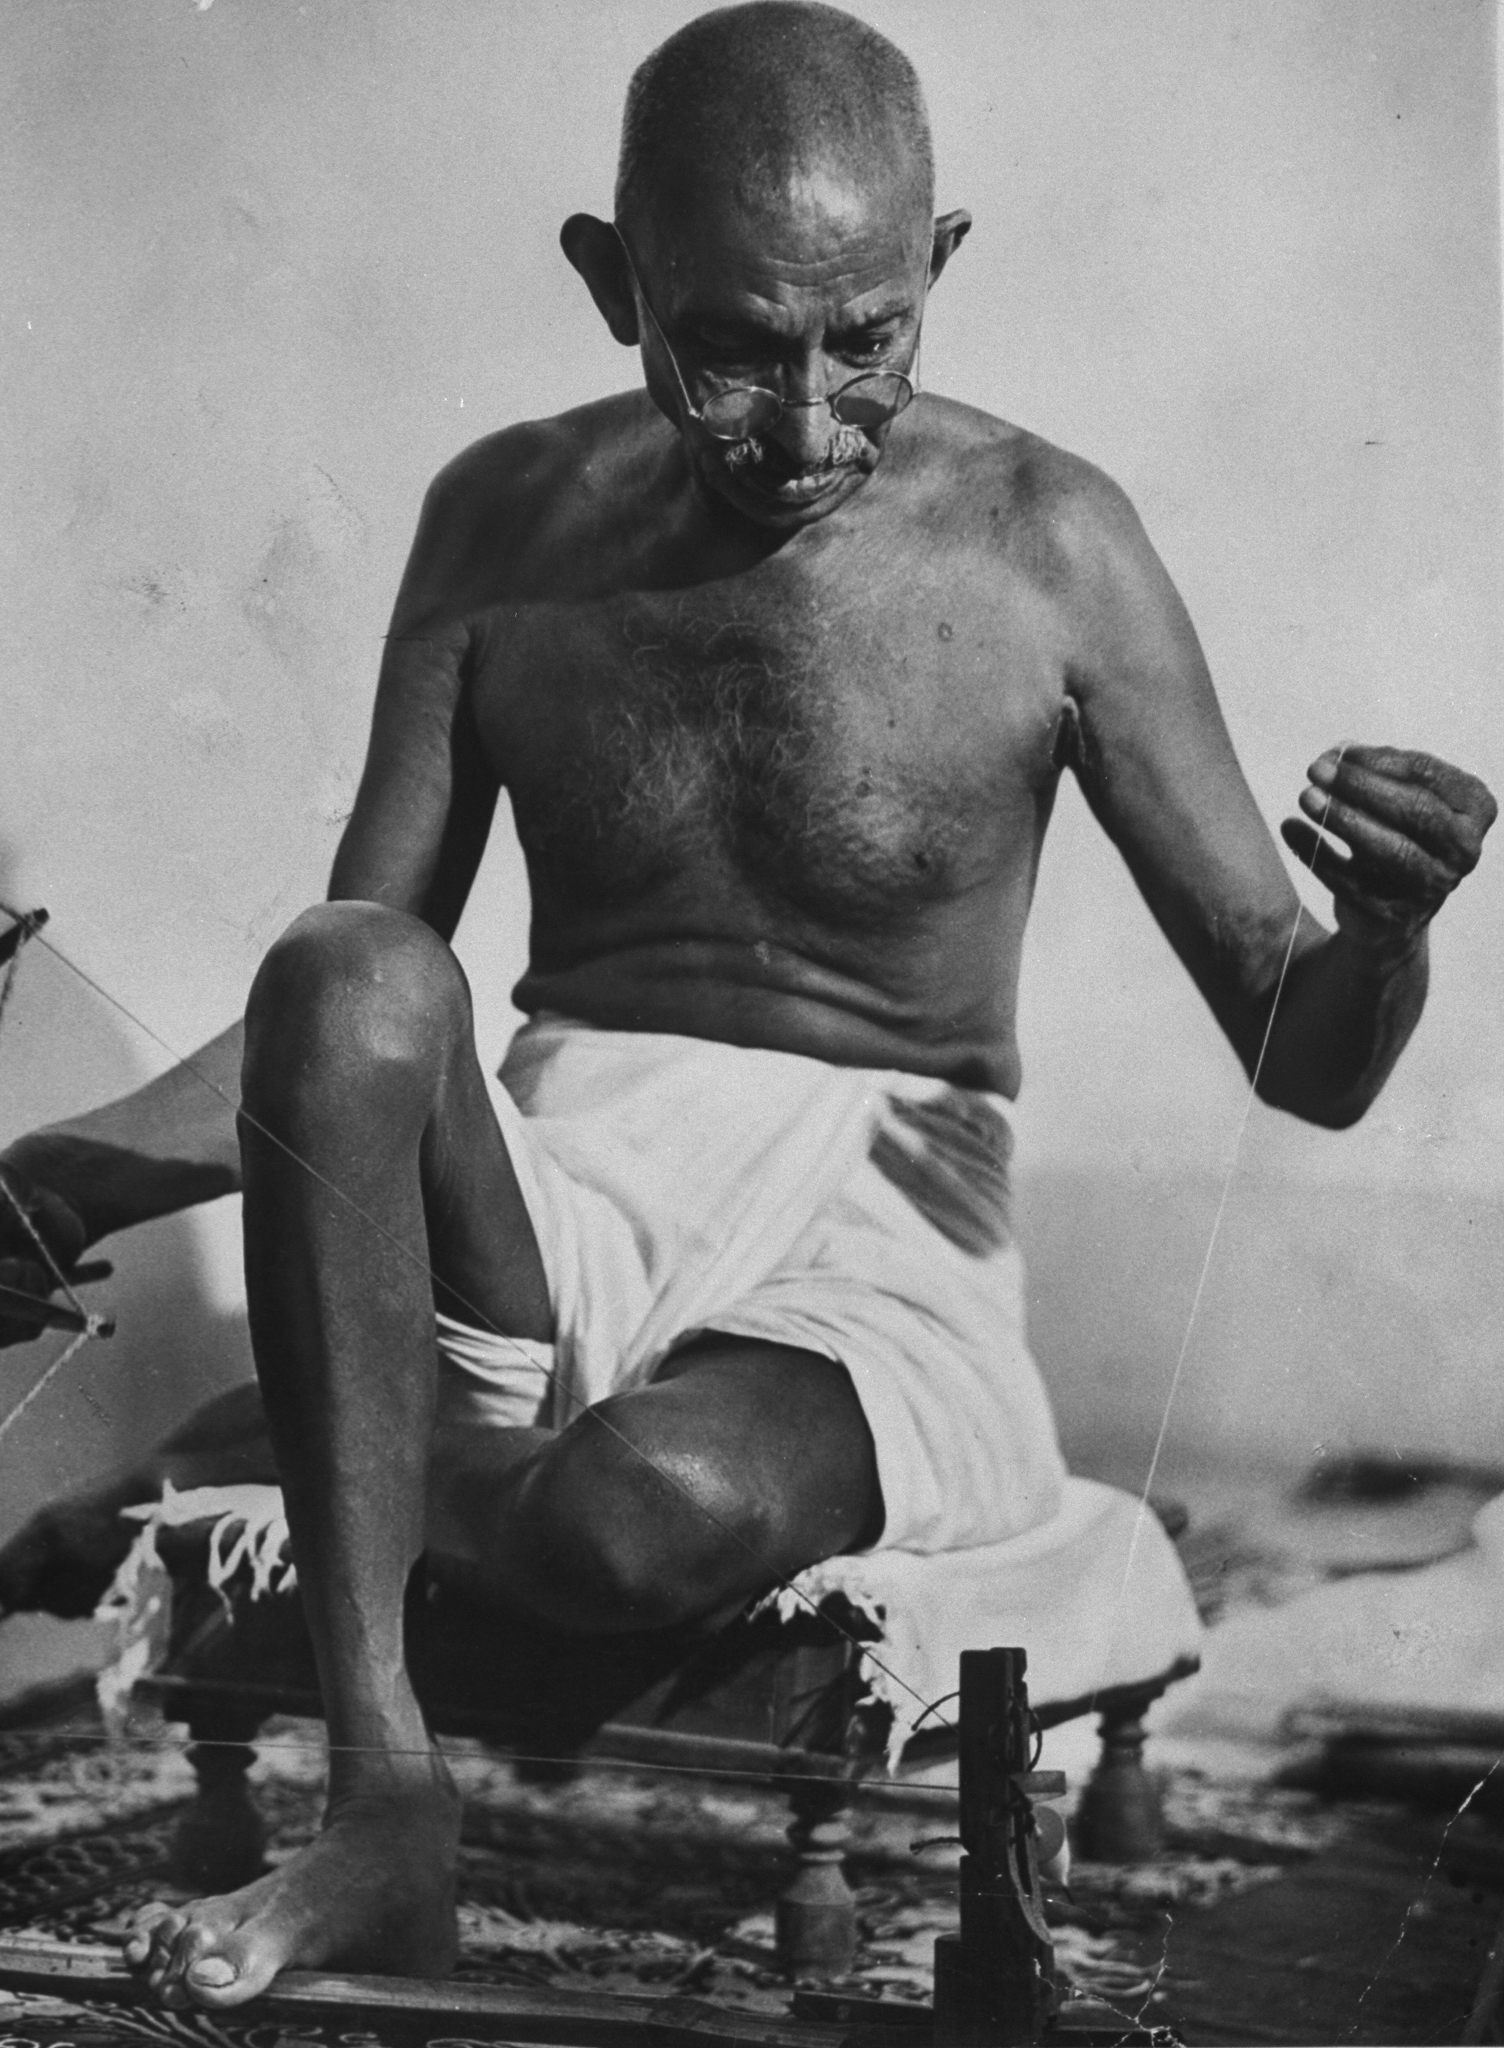 Mohandas Gandhi works at his spinning wheel